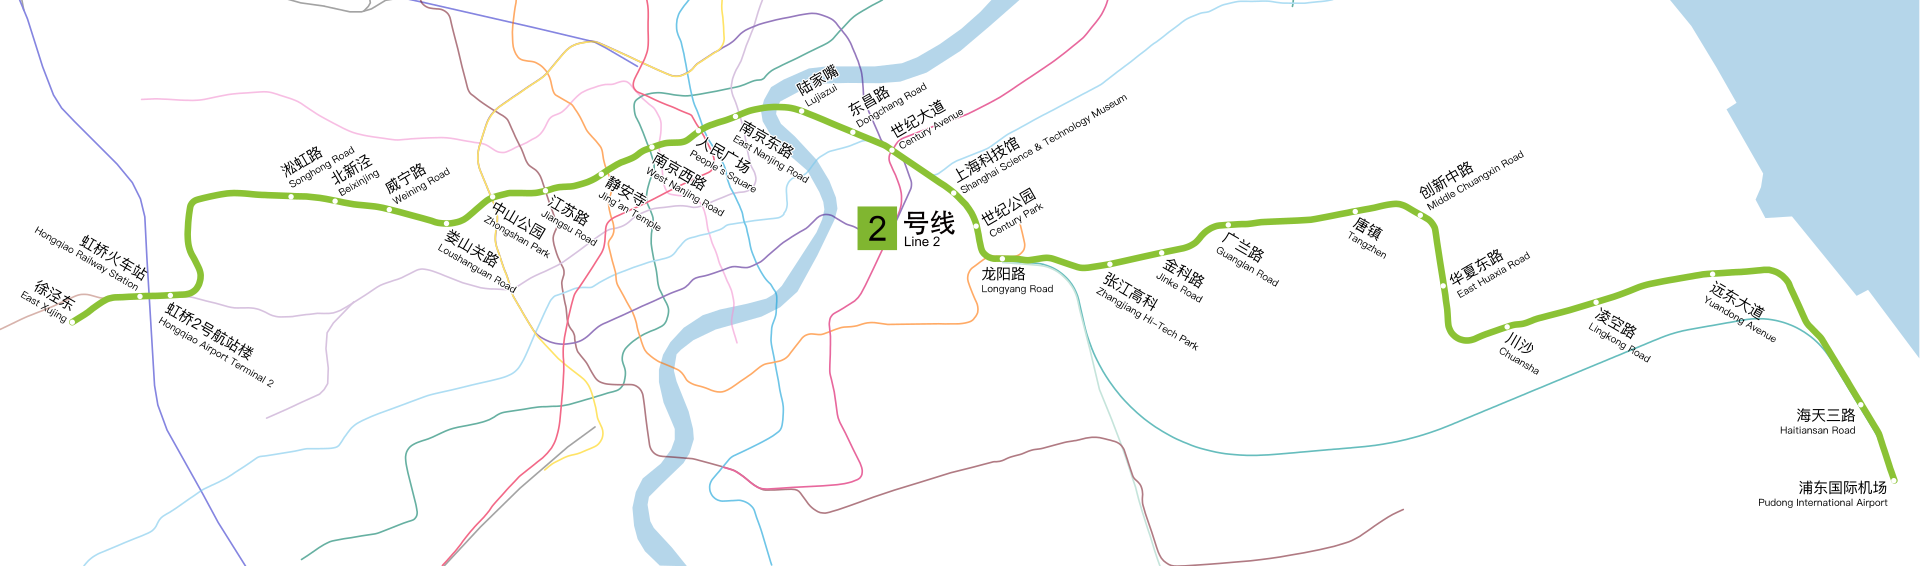 闵浦二桥地铁图片